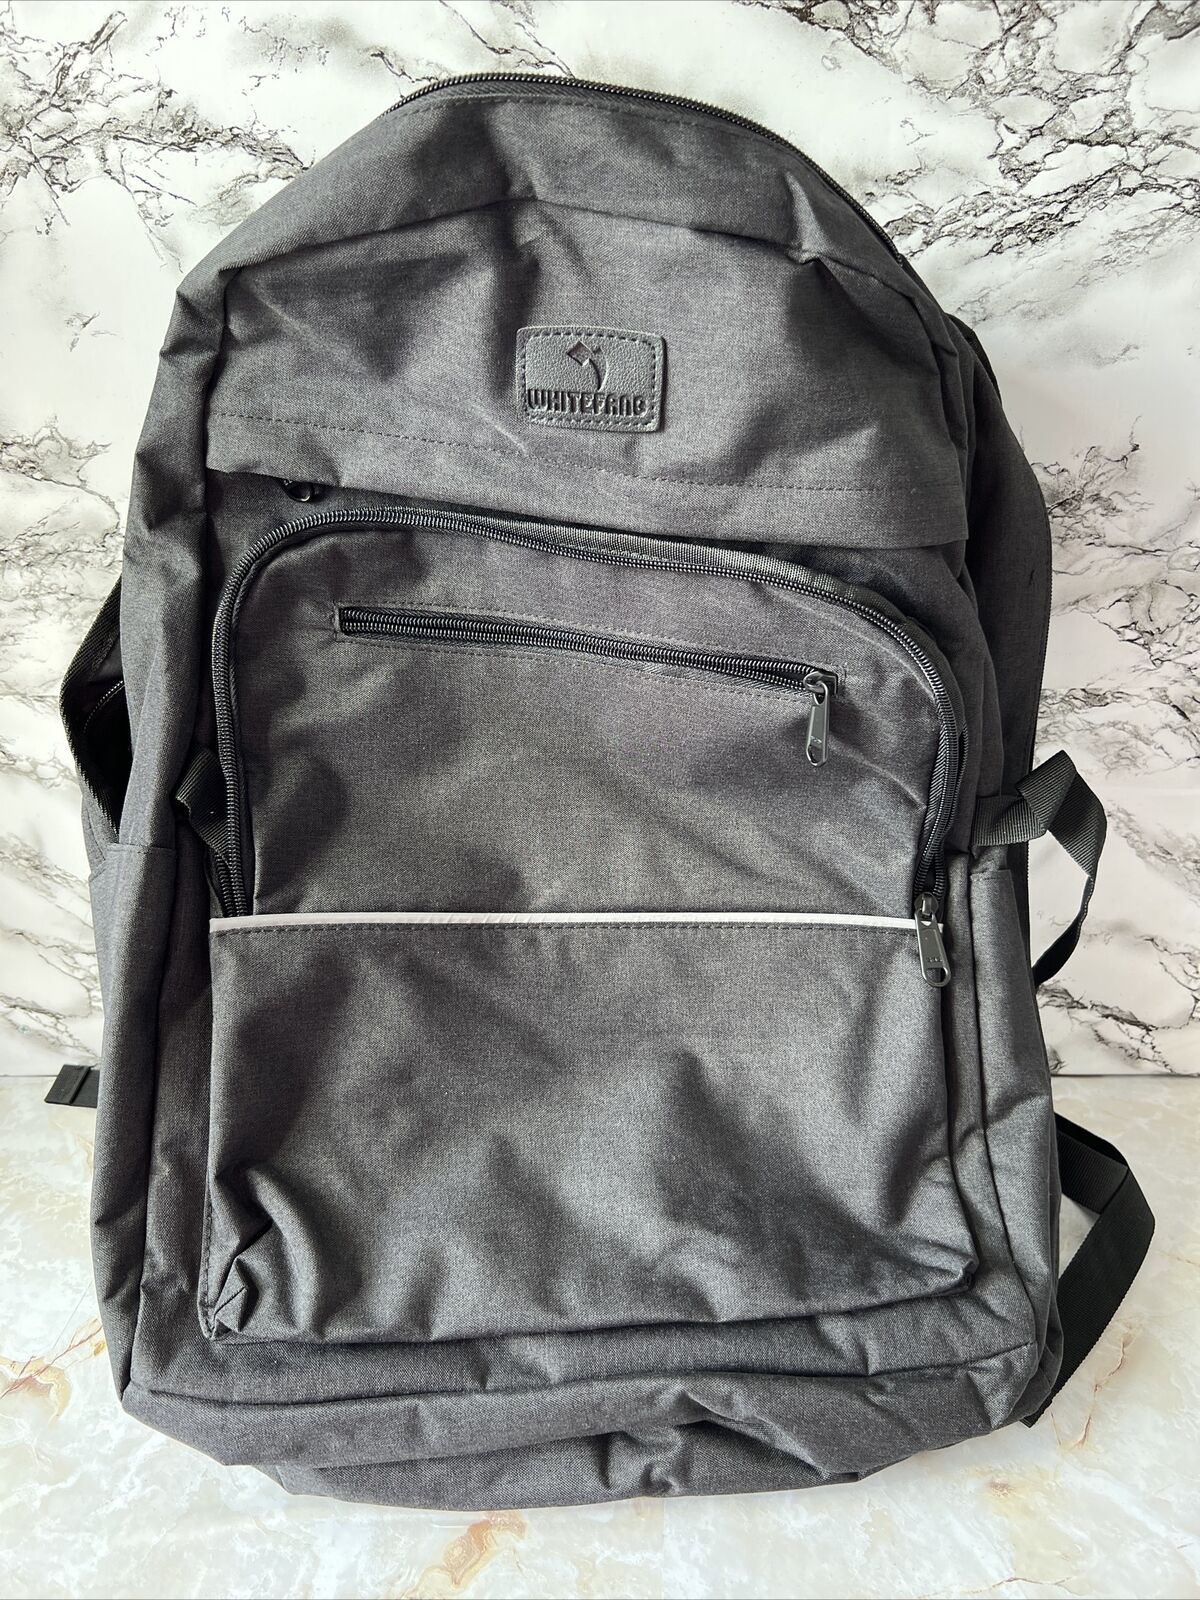 whitefang School Backpack Laptop Students Shoulder Bag Travel Bagw/usb